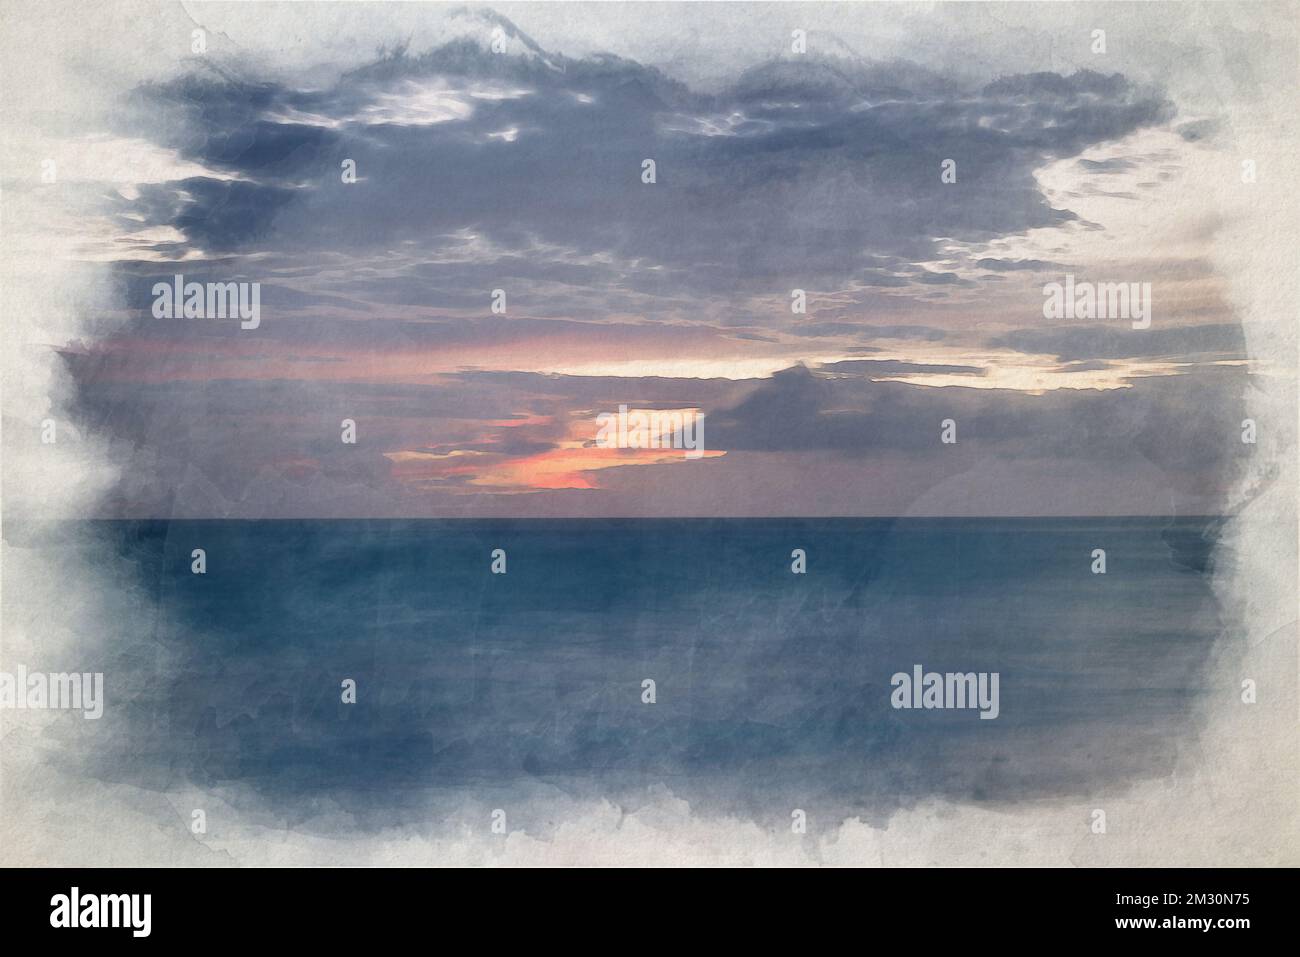 Ein digitales Aquarellgemälde des Meeres zur blauen Stunde, wenn die Dämmerung über einem weißen Sandstrand bricht. Stockfoto